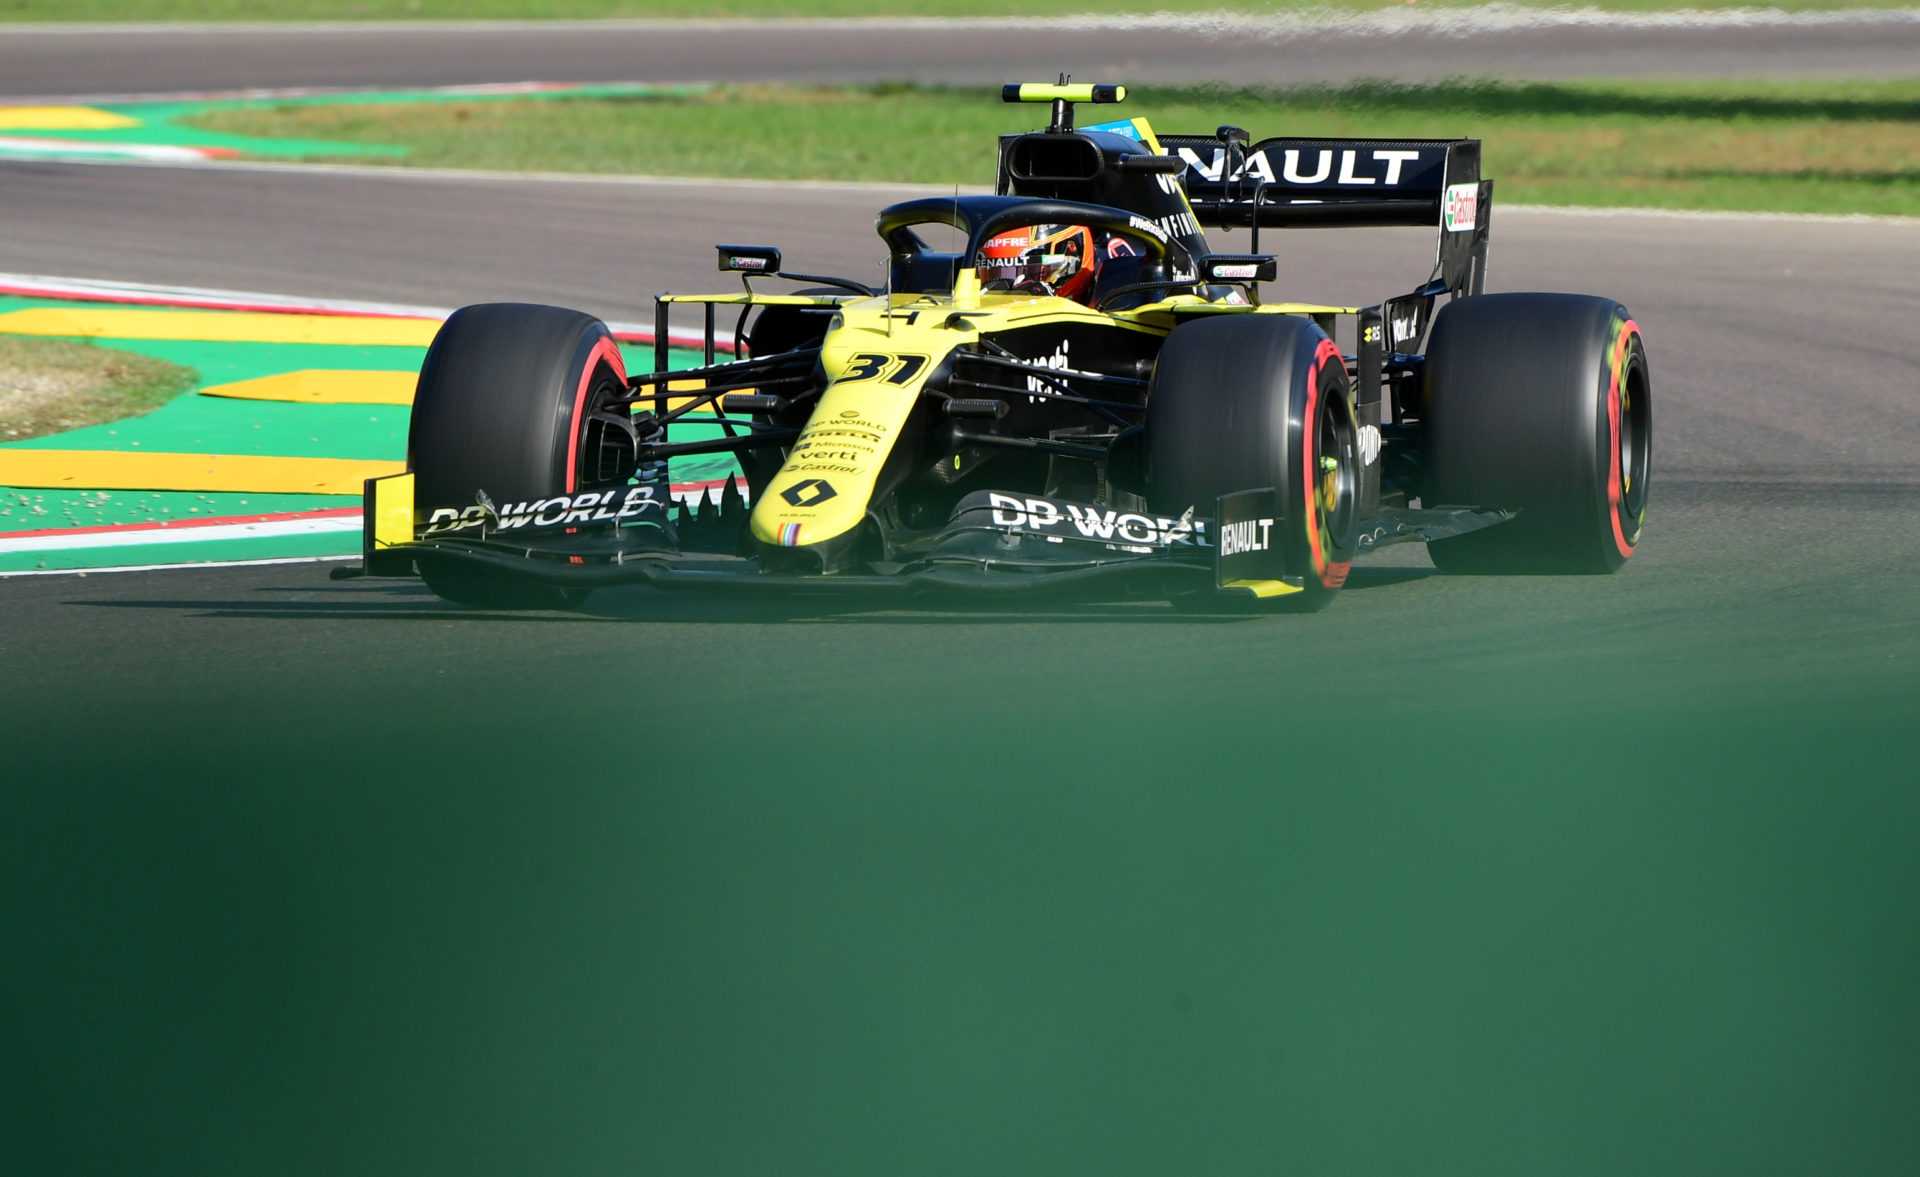 REGARDER: Esteban Ocon se trouve dans la McLaren Box au lieu de Renault aux essais libres d'Imola